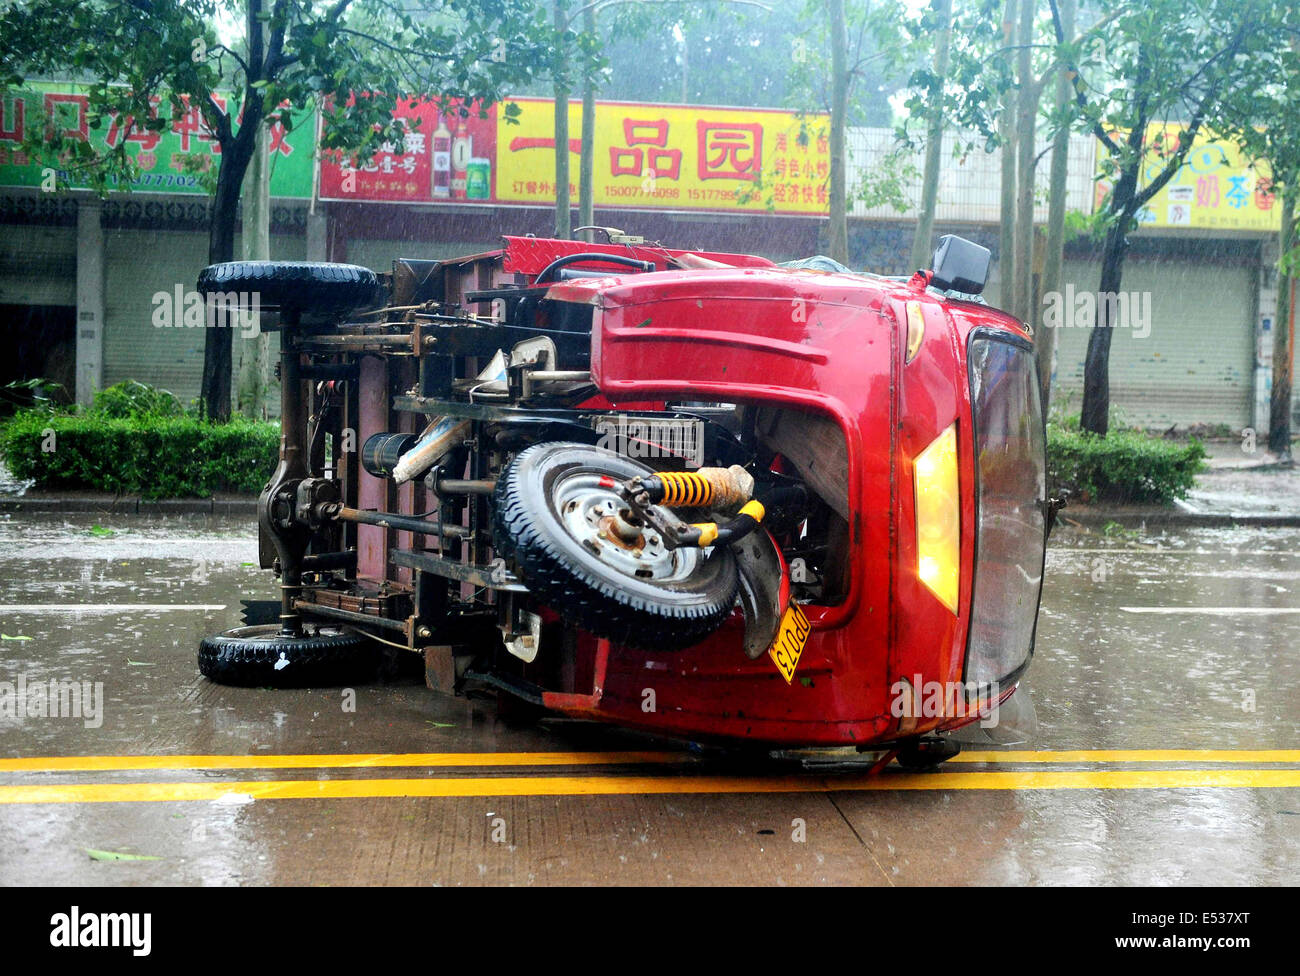 Qinzhou. 19. Juli 2014. Foto aufgenommen am 19. Juli 2014 zeigt eine umgestürzte Fahrzeug aufgrund der super-Taifun Rammasun in Qinzhou City von Guangxi Zhuang Autonome Region. Taifun Rammasun, die neunte in diesem Jahr und die stärksten in Jahrzehnten bildete seine neuesten Landfall in Südwest-China Guangxi bei 07:10 am Samstag und verpackten Stürme von bis zu 48 Metern pro Sekunde, die National Meteorological Center (NMC) sagte in einer Erklärung. Bildnachweis: Zhang Ailin/Xinhua/Alamy Live-Nachrichten Stockfoto